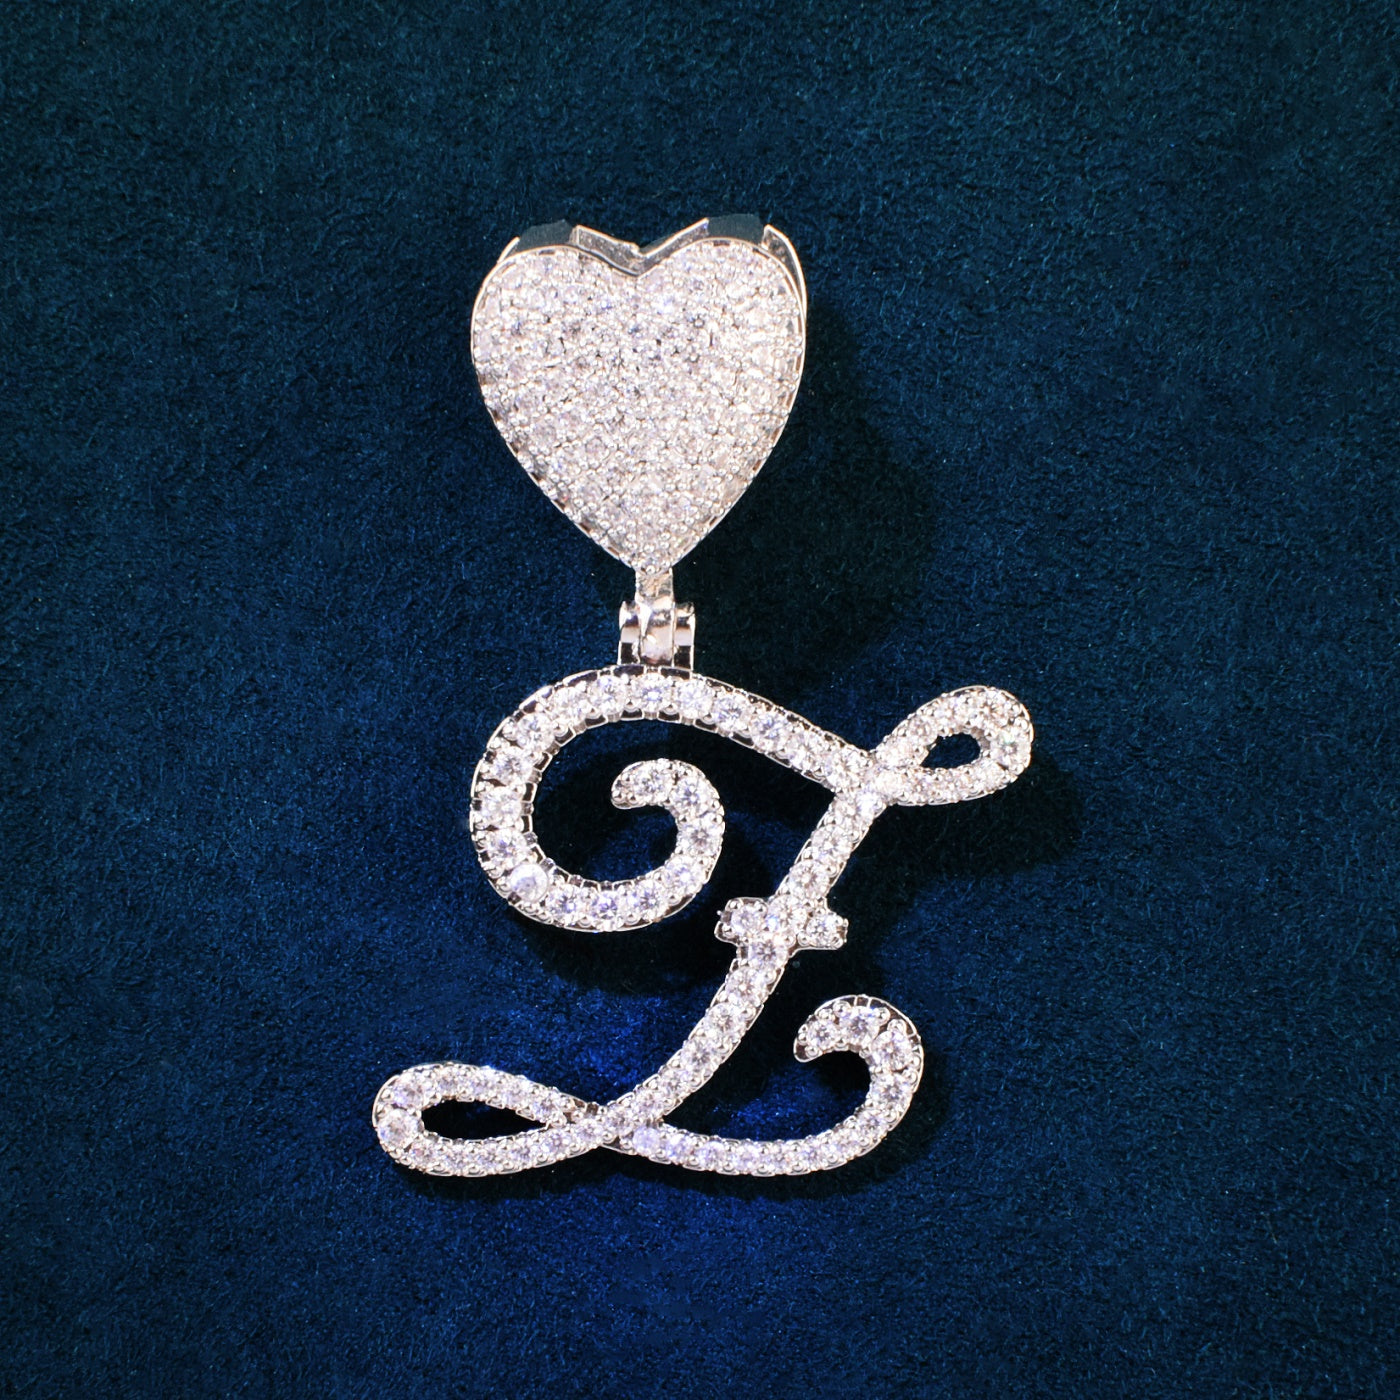 A~Z Single Cursive Letter Pendant Necklace